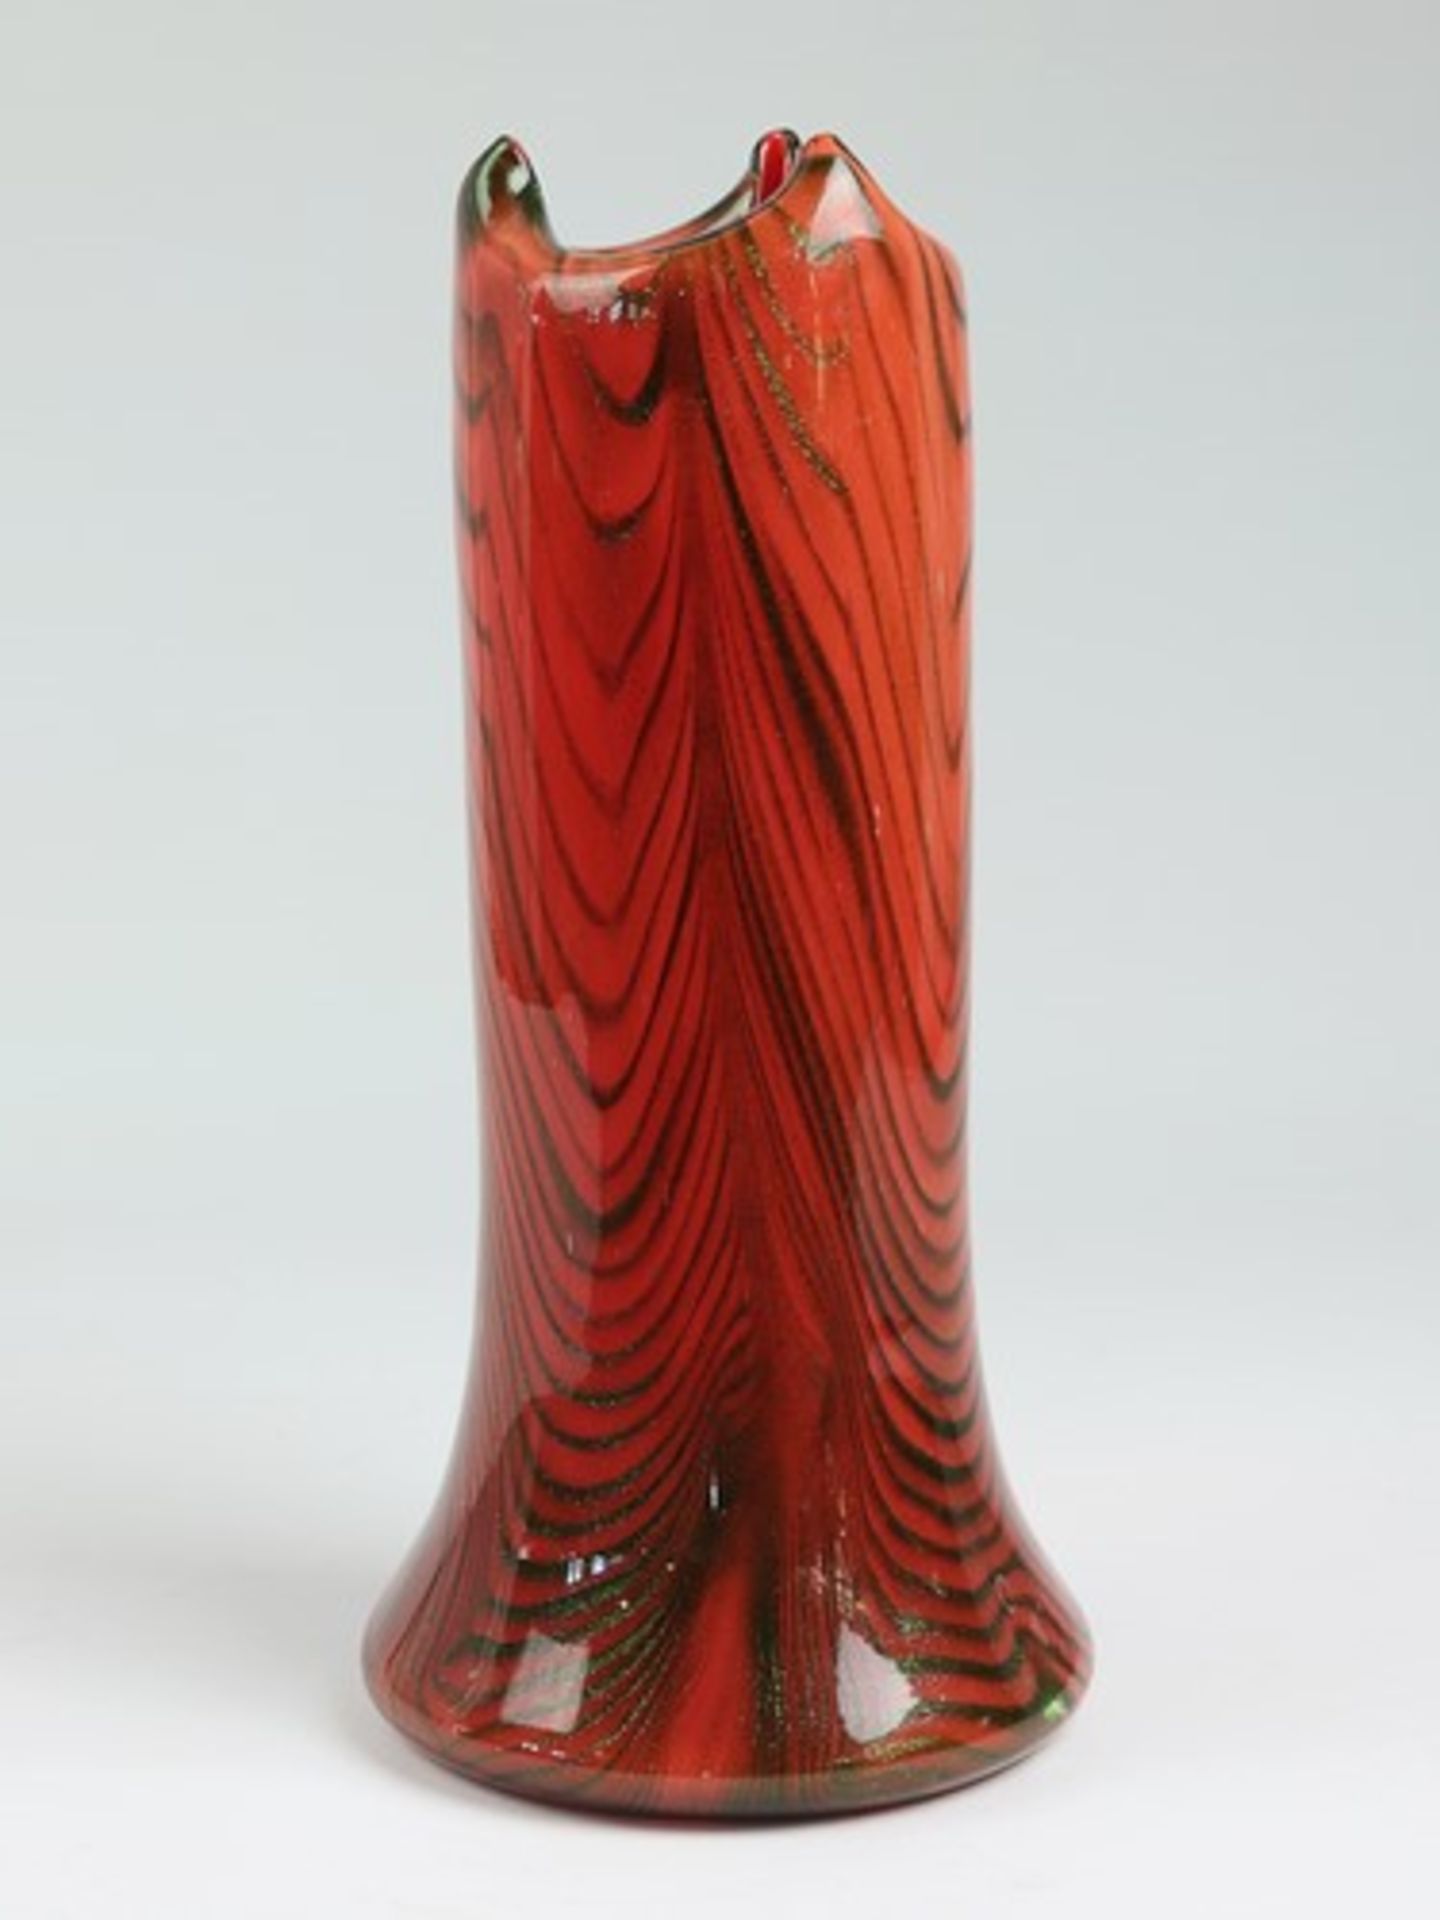 Leerdam Unica - Vase1950/60er J., farbloses dickwandiges Glas, runder breiter Stand m. geschliffenem - Bild 2 aus 7